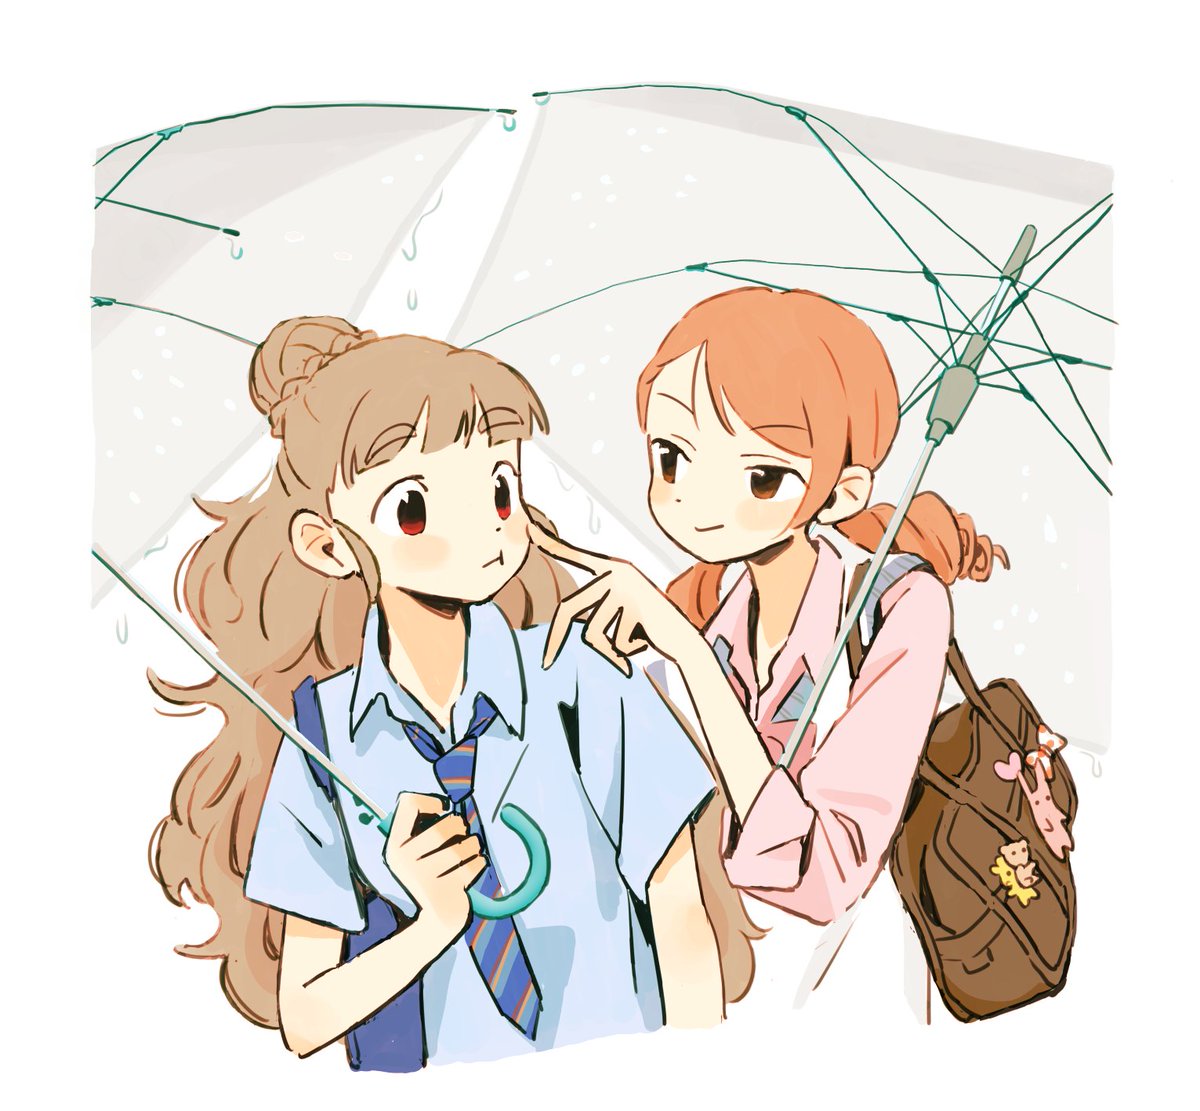 hojo karen ,kamiya nao cheek poking multiple girls 2girls poking umbrella necktie bag  illustration images